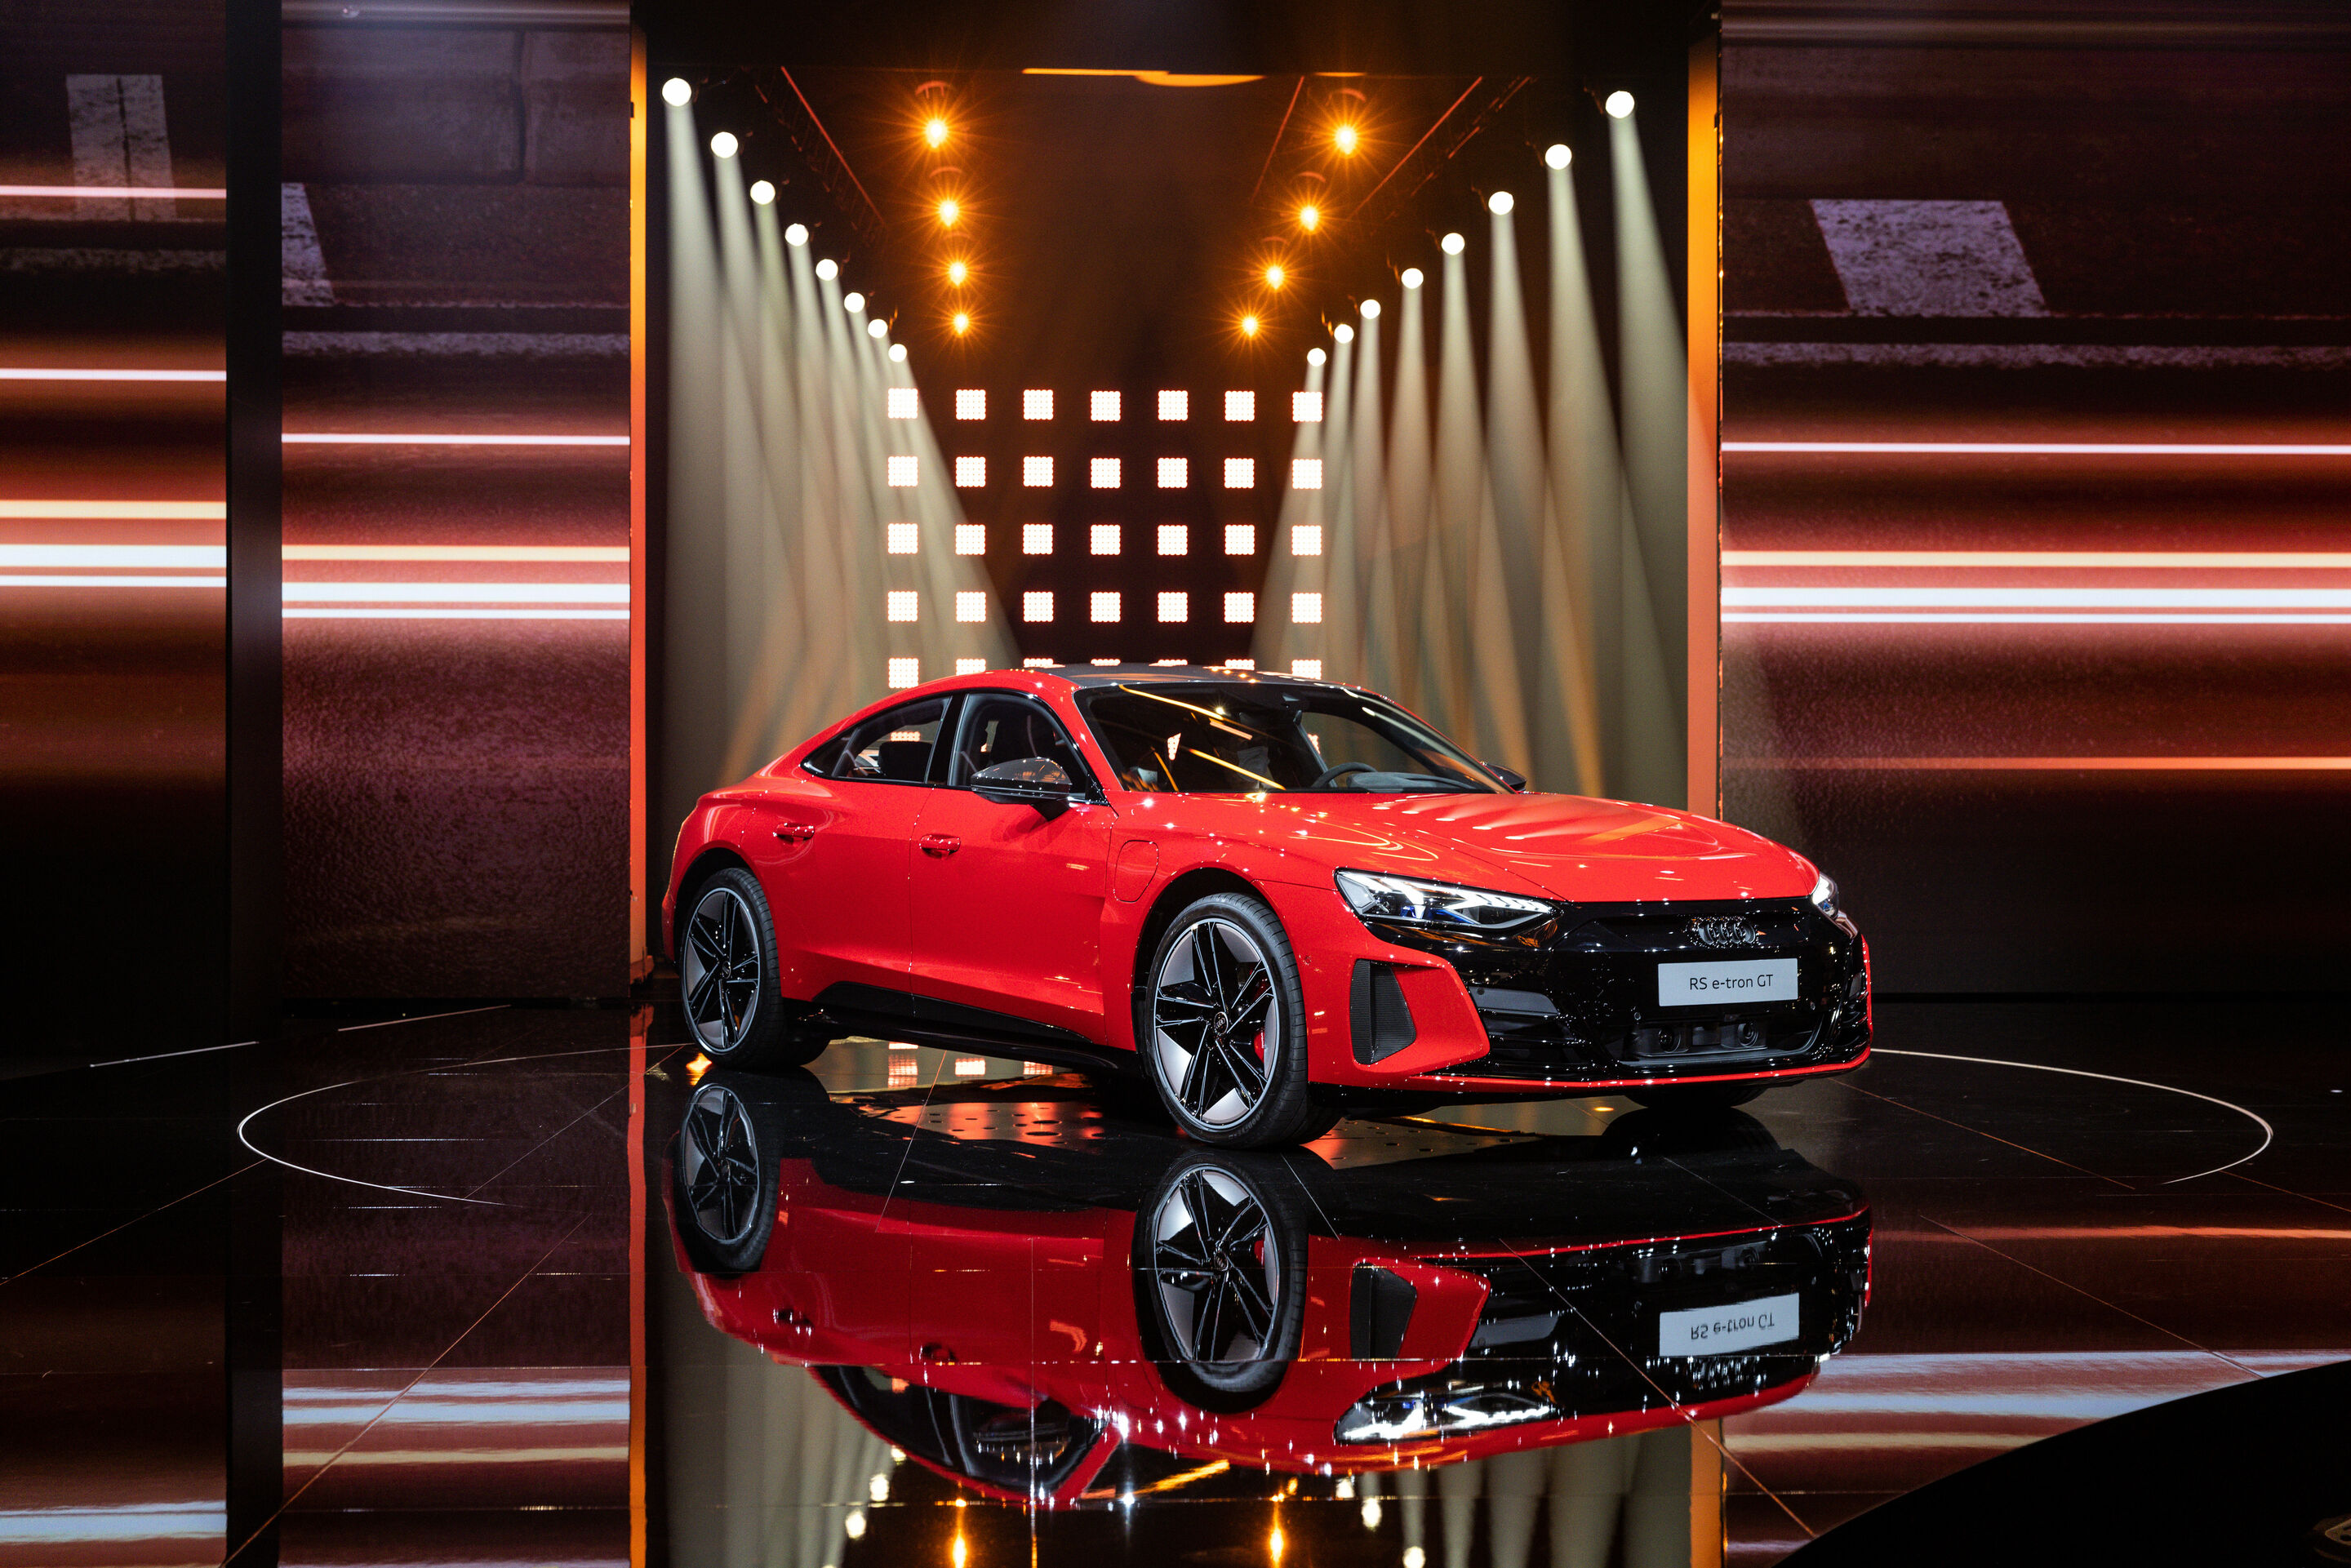 Dynamisch und hochkarätig: die Online-Weltpremiere des Audi e-tron GT